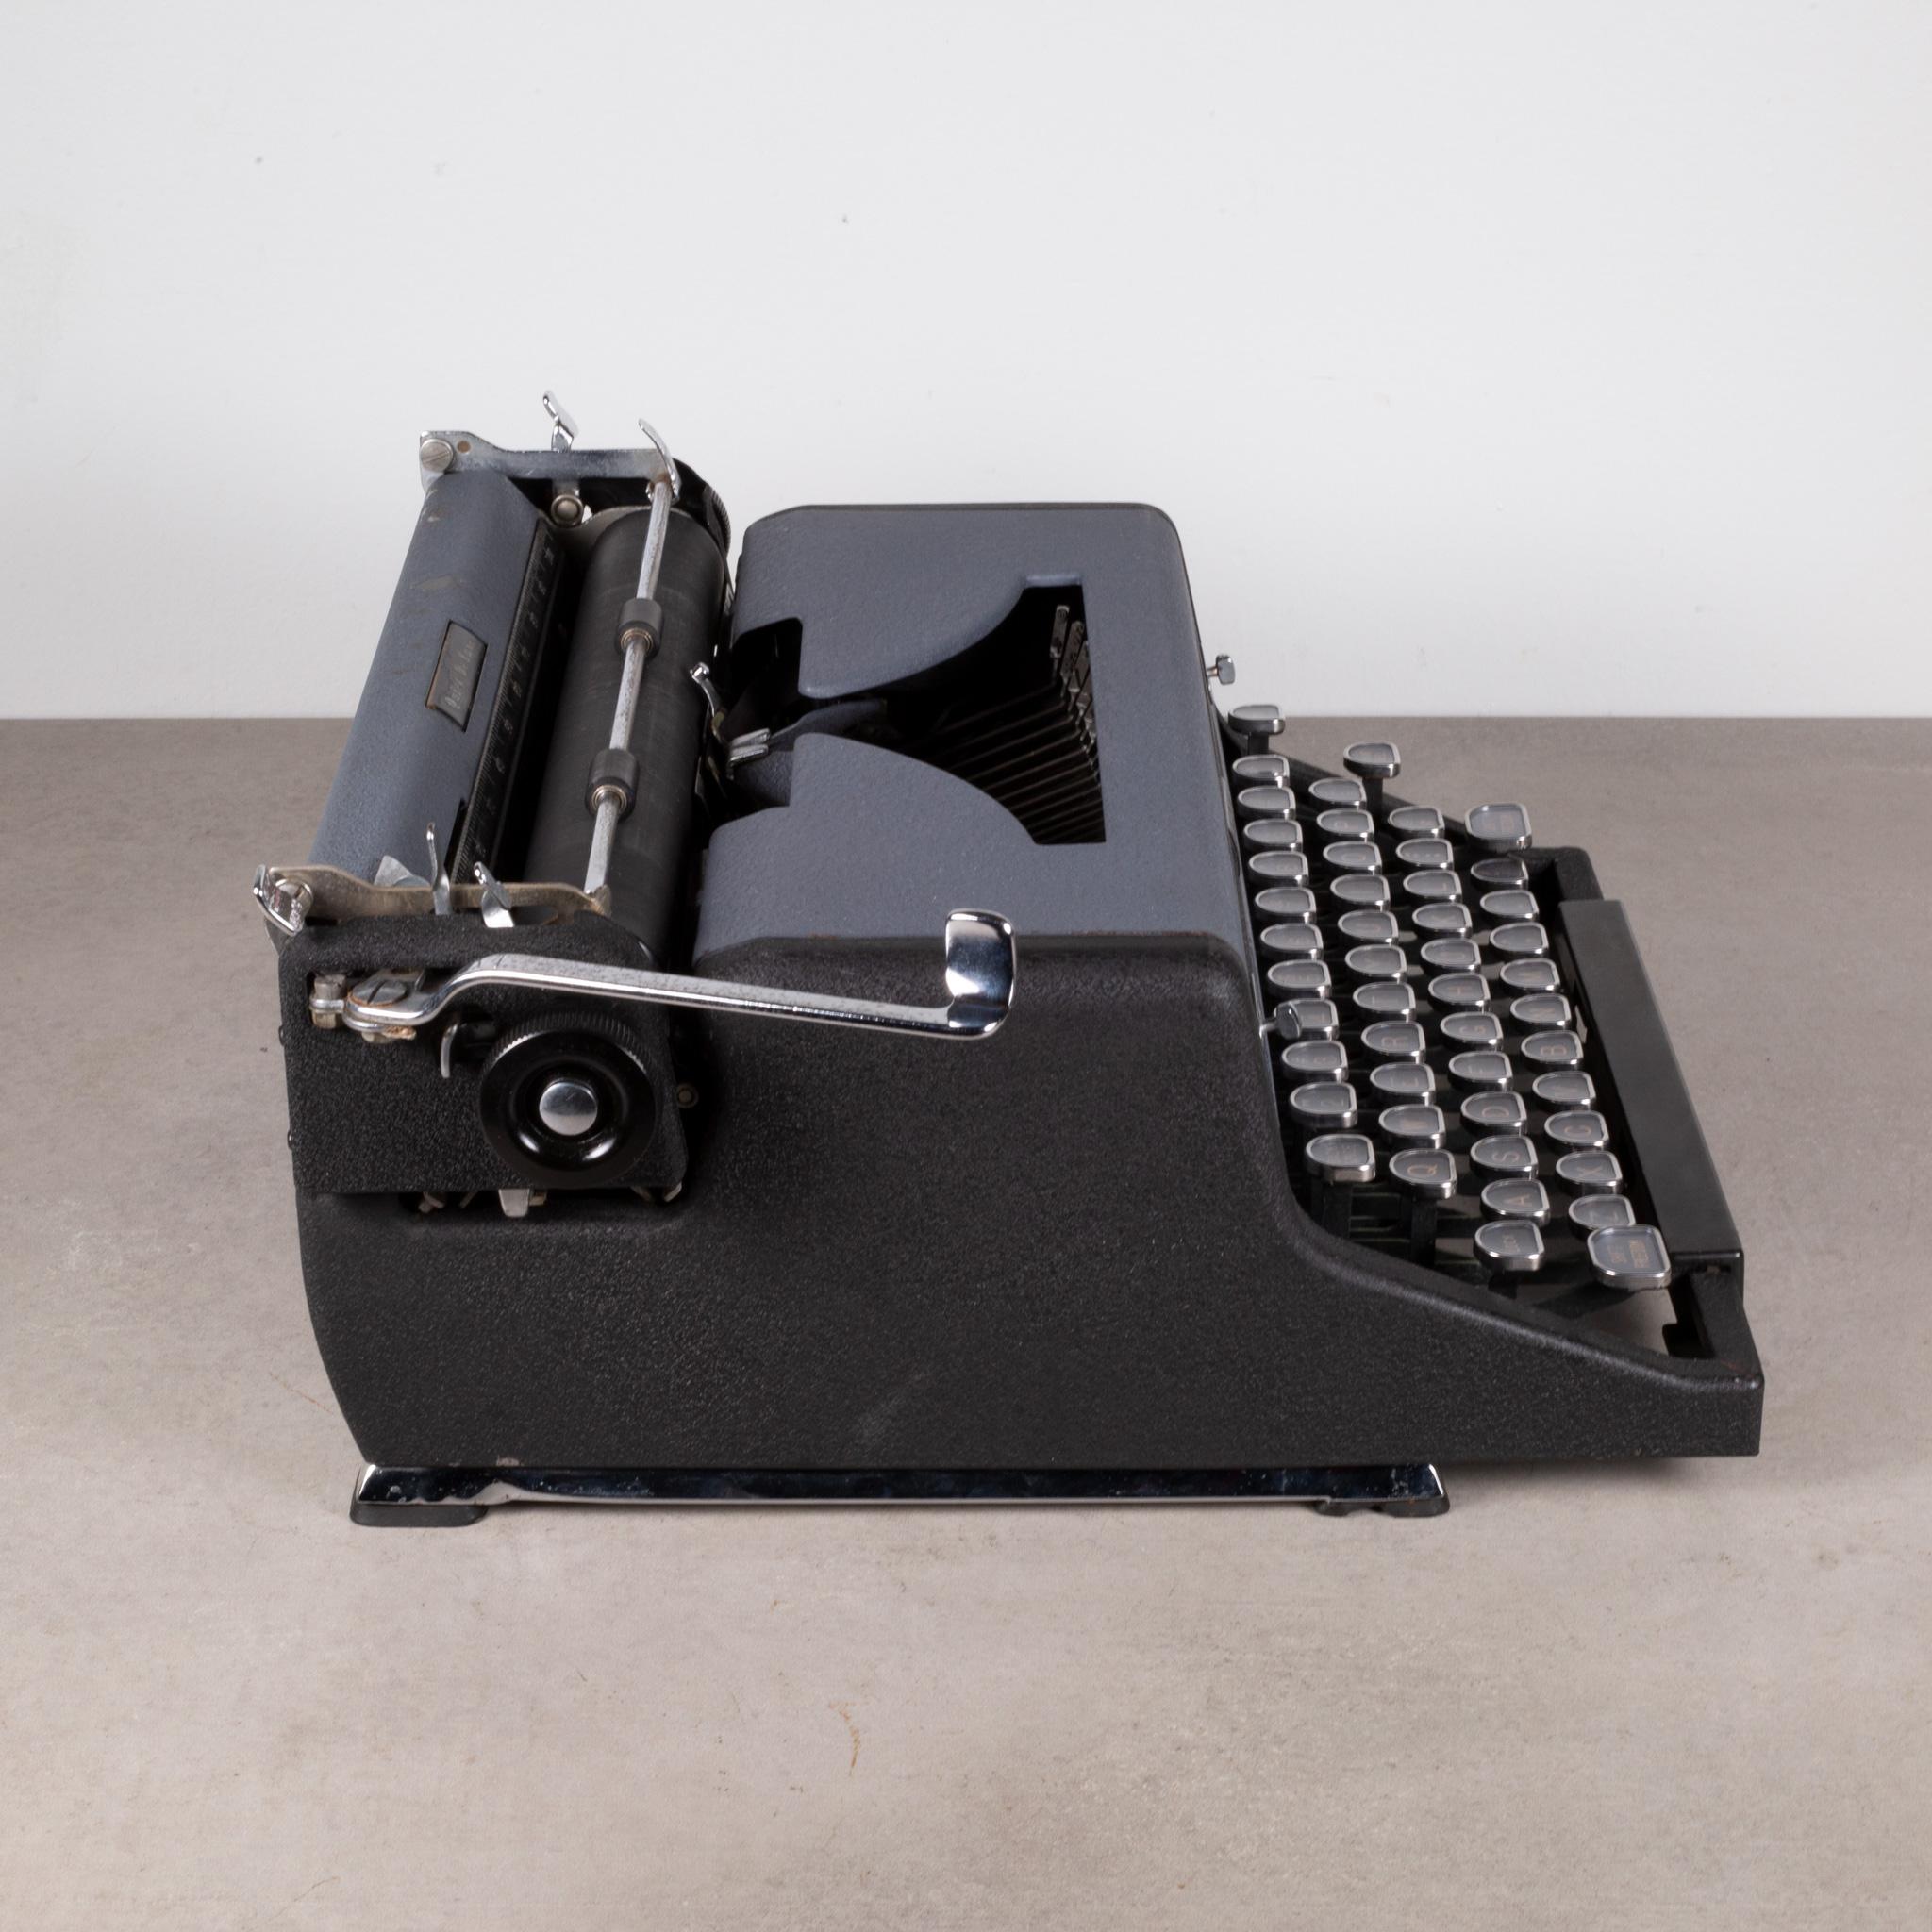 Royal Quiet DeLuxe Two Tone Typewriter und Koffer, um 1948  (KOSTENLOSER VERSAND) (Metall)